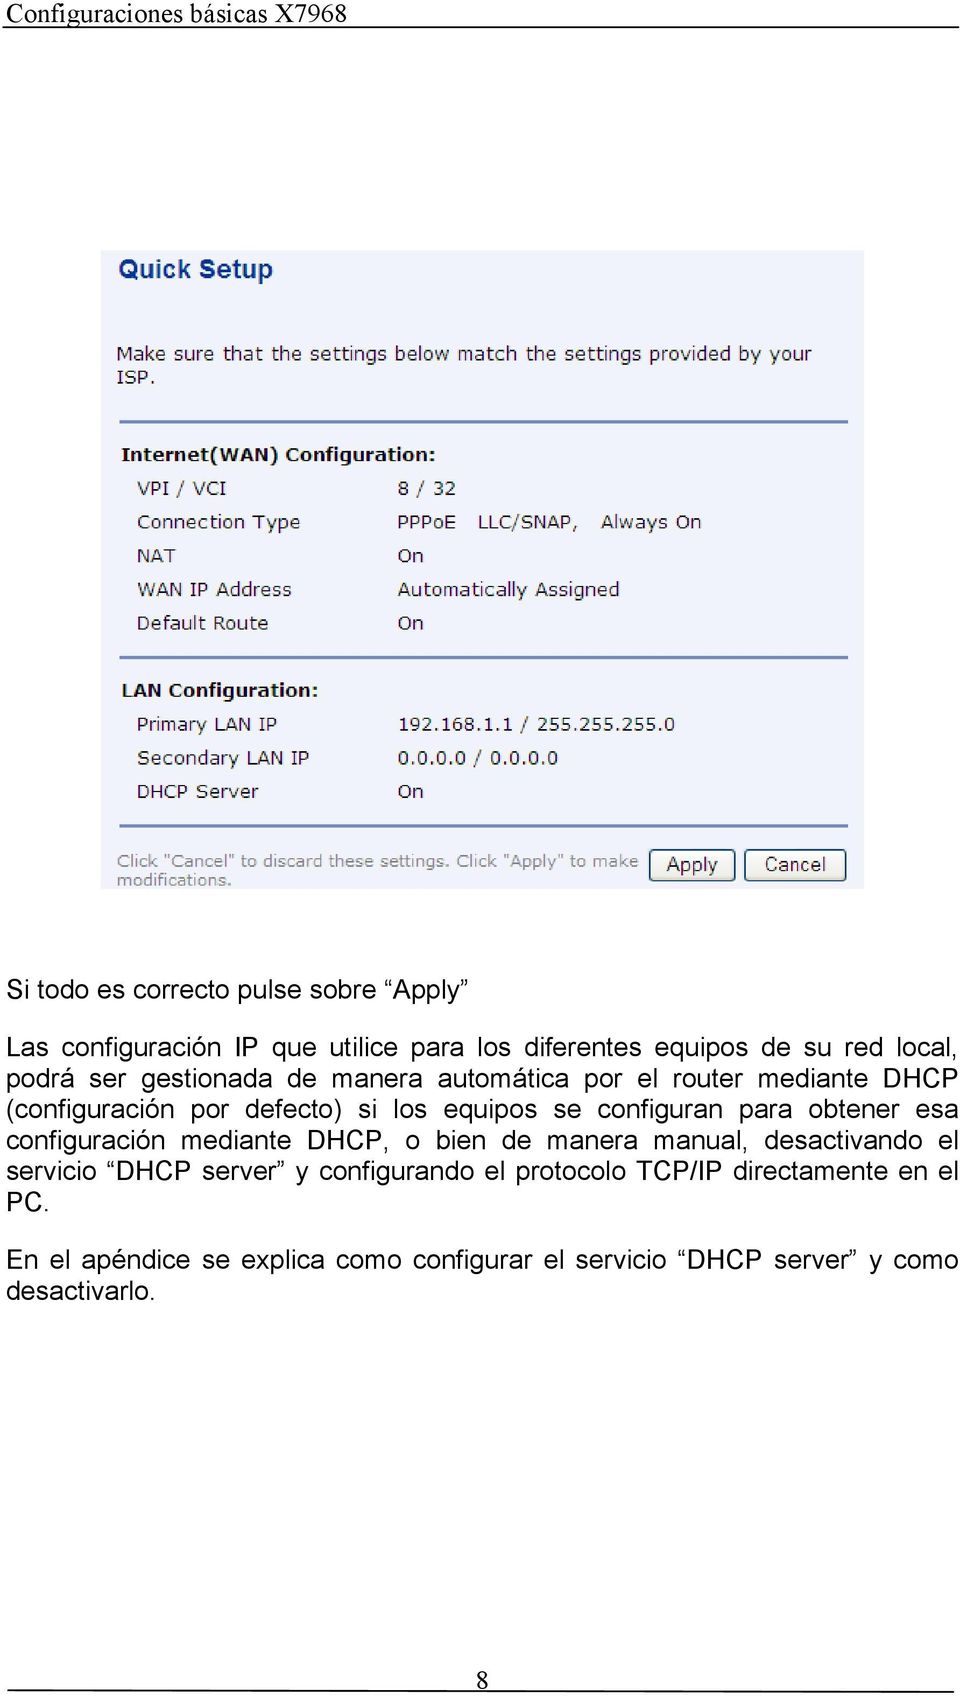 para obtener esa configuración mediante DHCP, o bien de manera manual, desactivando el servicio DHCP server y configurando